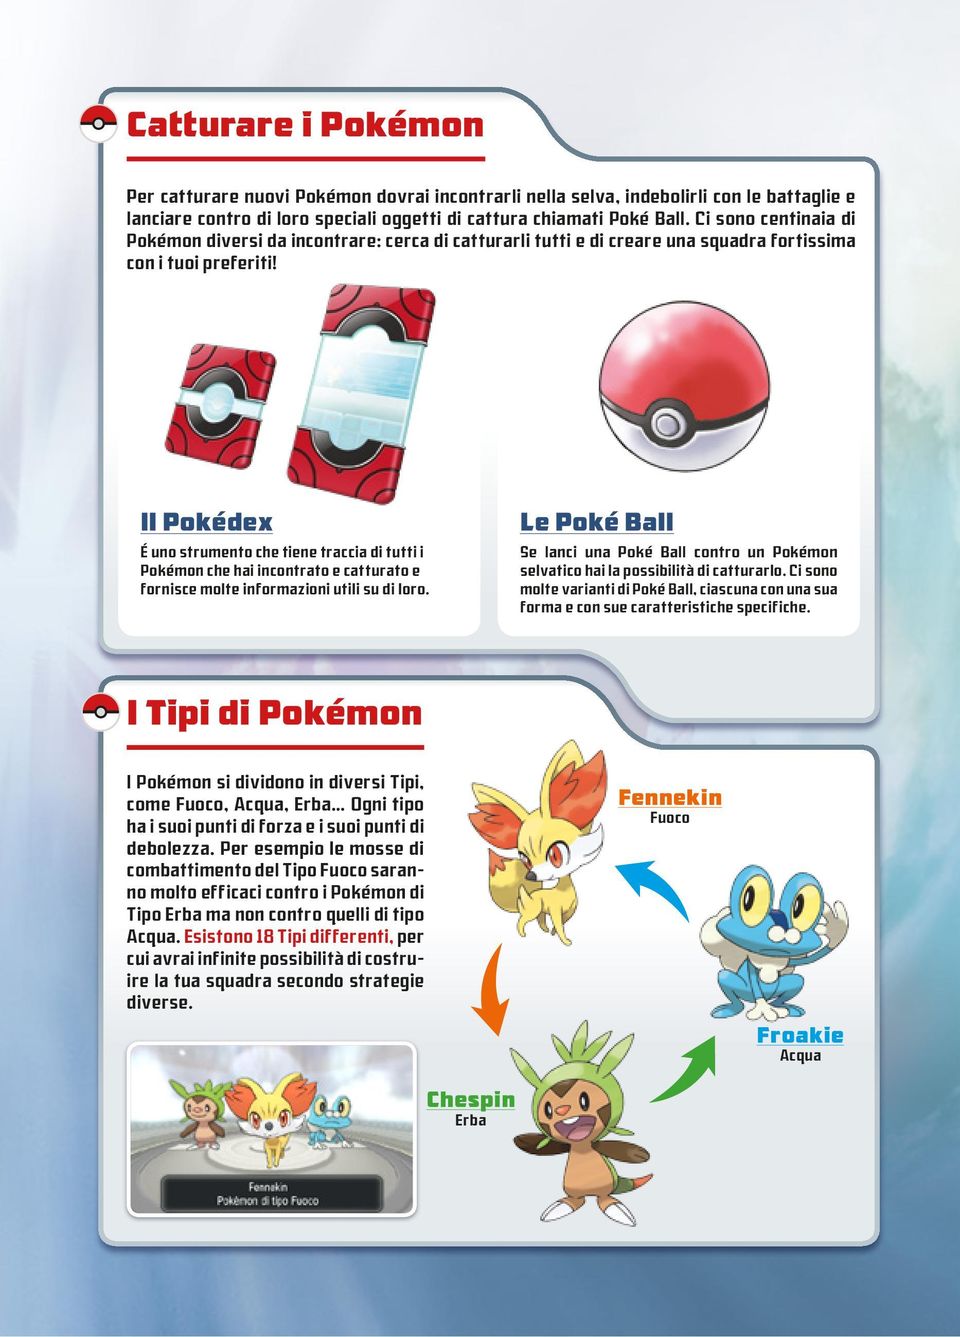 Il Pokédex É uno strumento che tiene traccia di tutti i Pokémon che hai incontrato e catturato e fornisce molte informazioni utili su di loro.